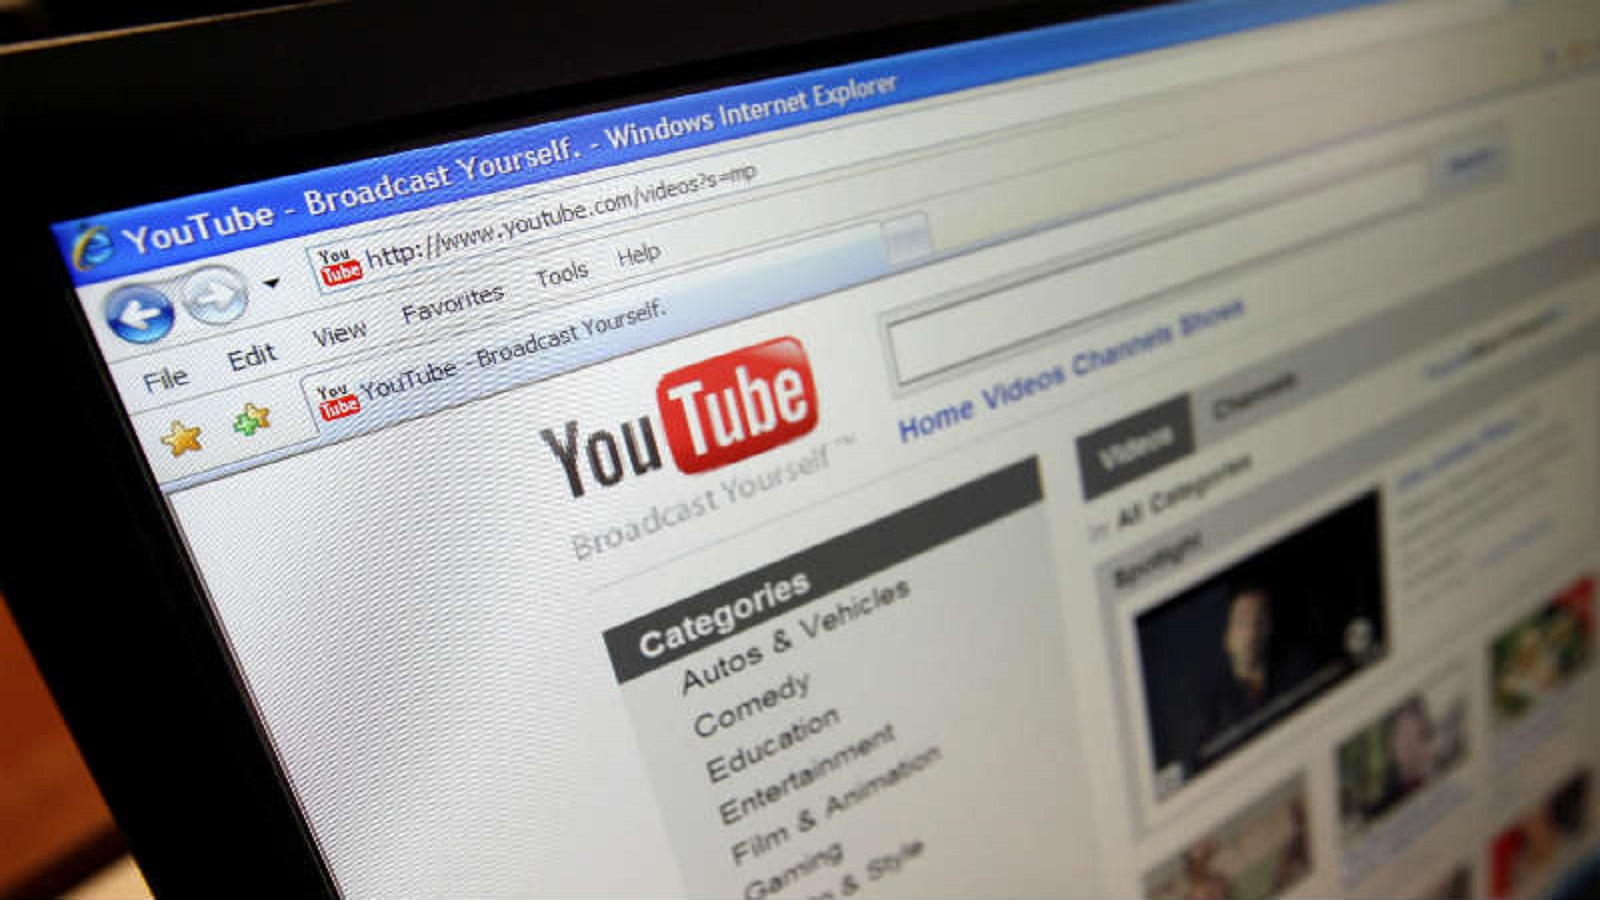 "يوتيوب" يستمر ببث الإعلانات في فيديوهات التطرف